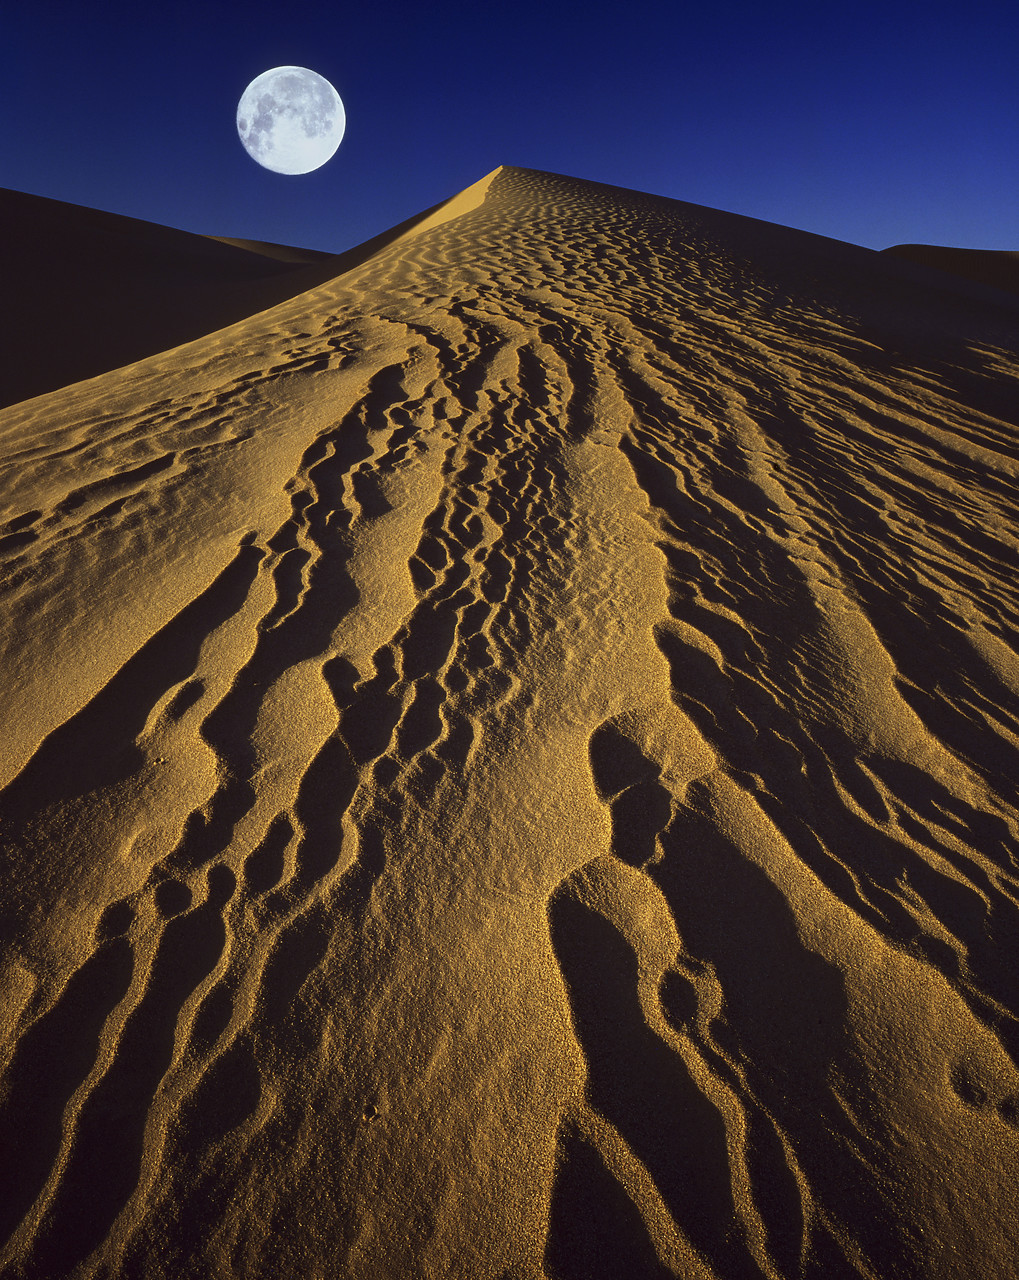 #924098-1 - Full Moon over Sand Dune, near Yuma, Arizona, USA